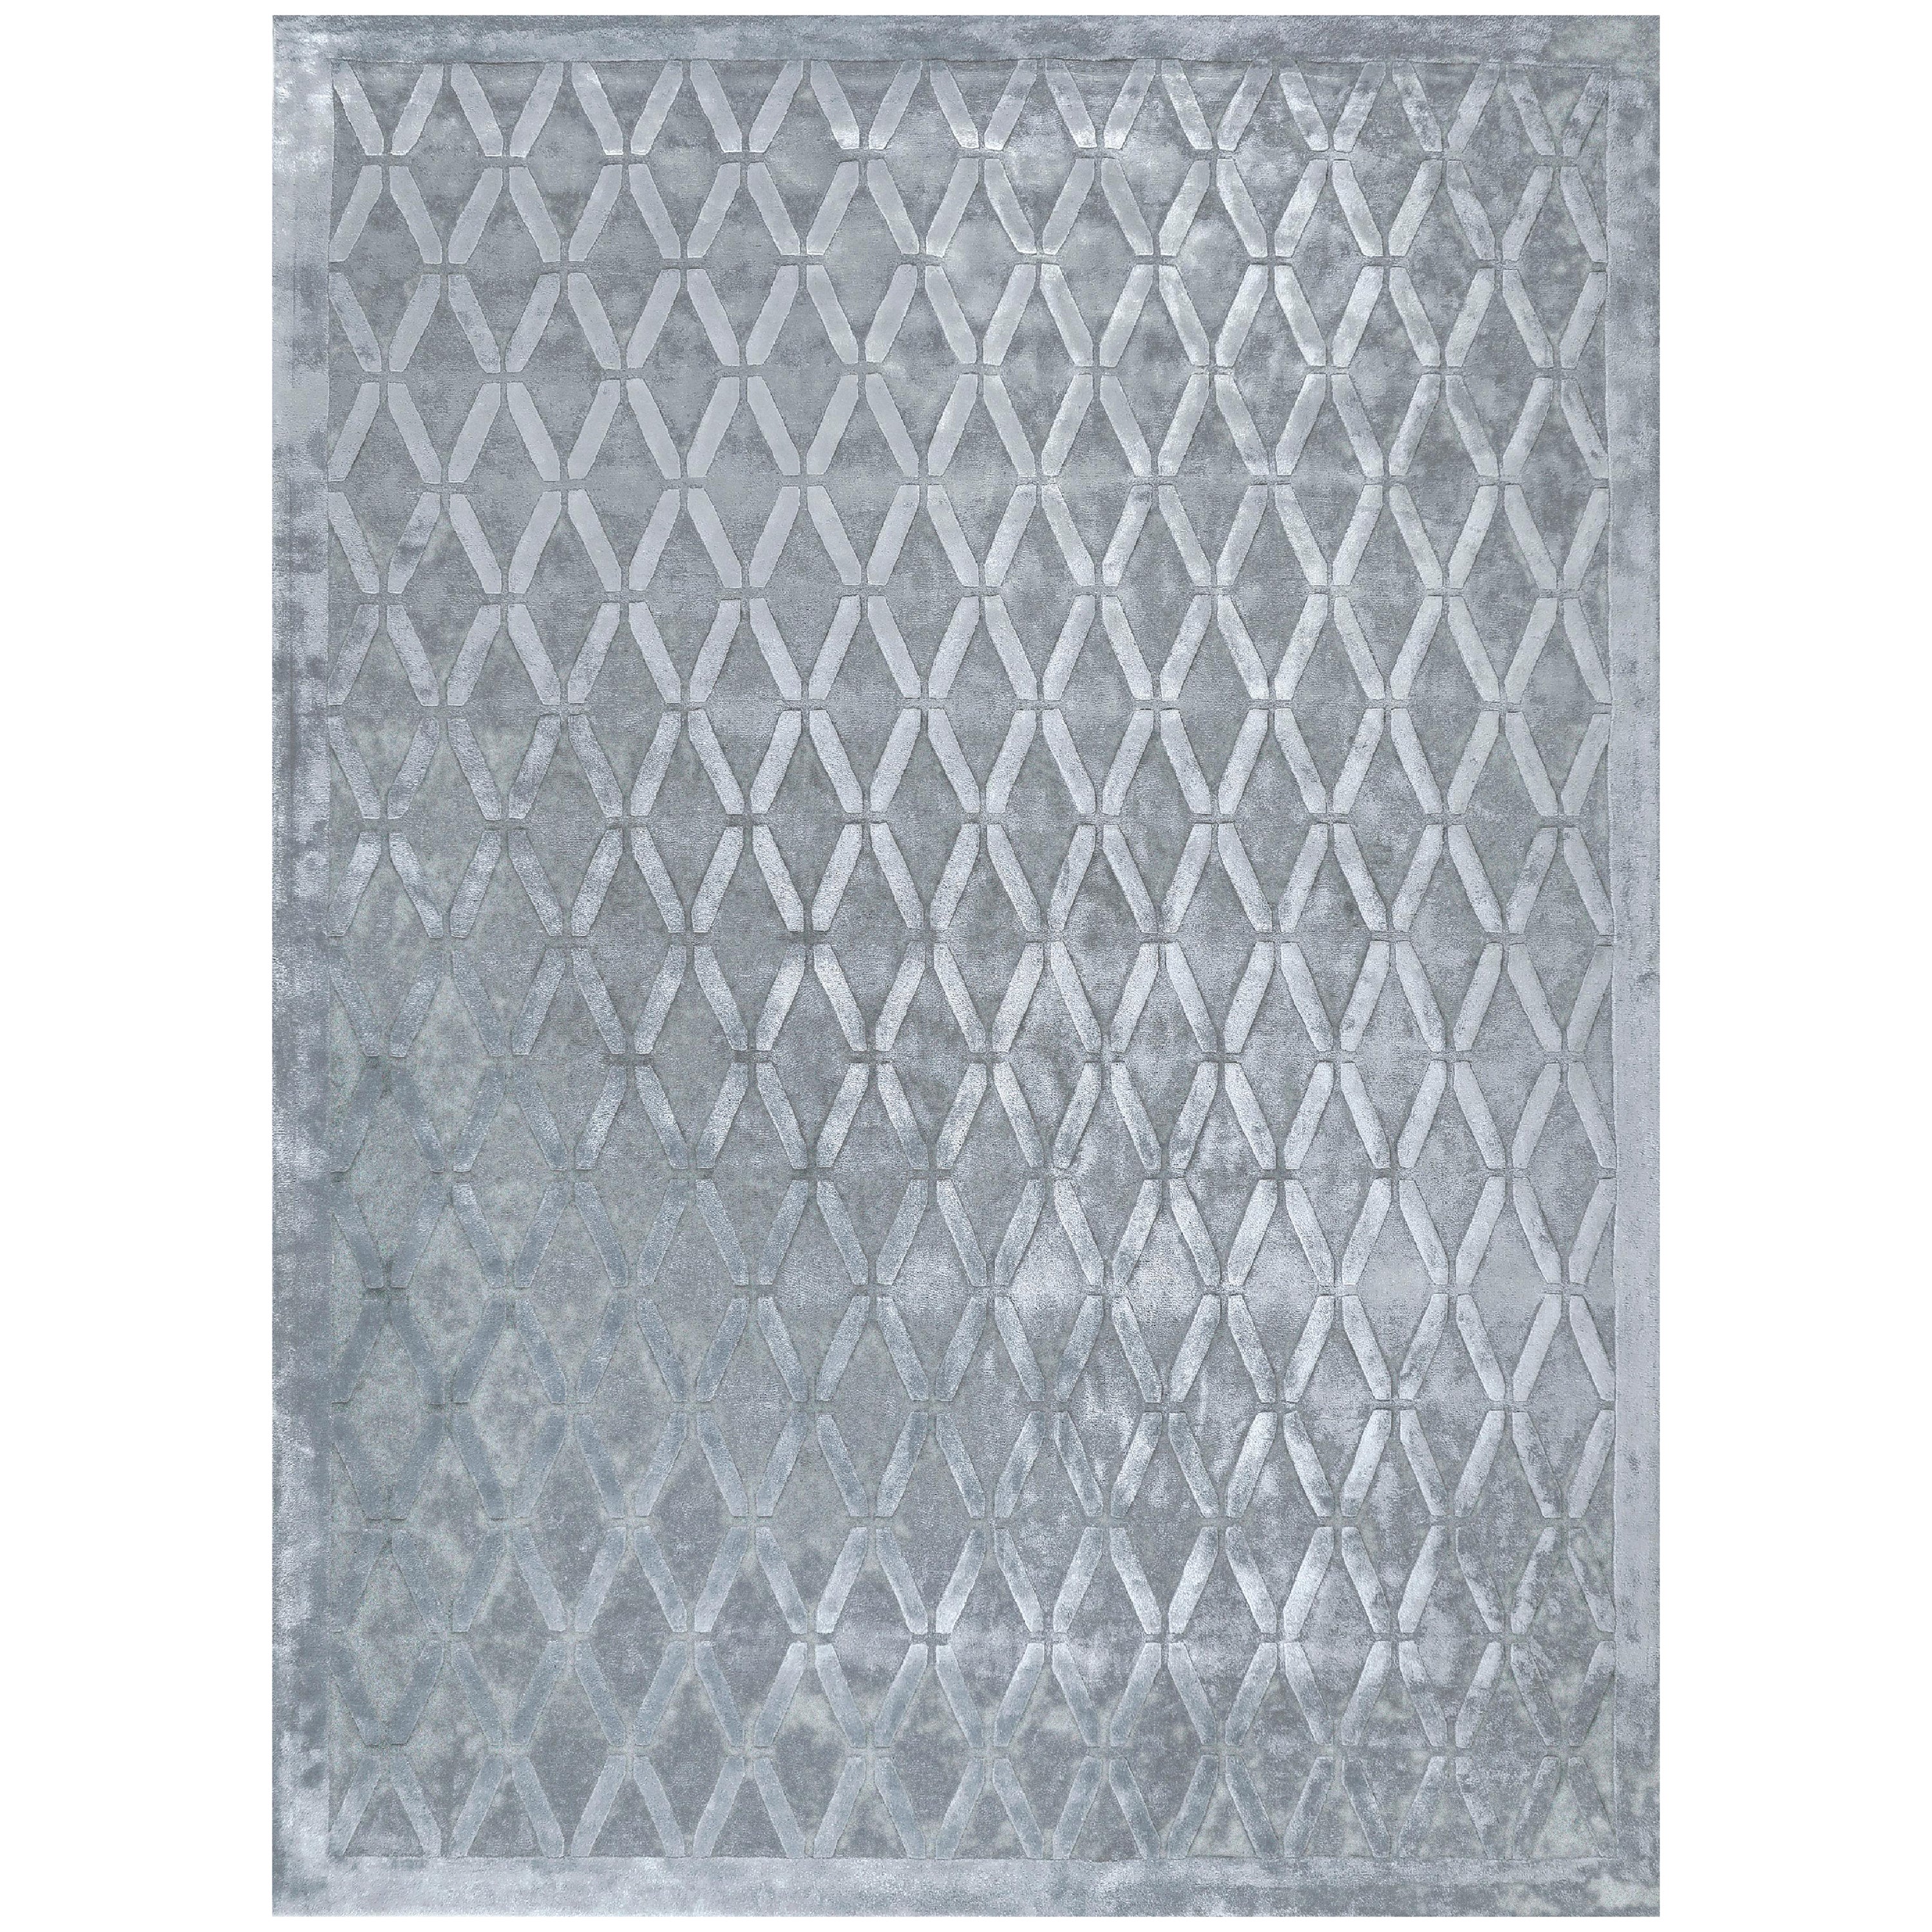 TRIAD Handgetufteter moderner geometrischer Seidenteppich in Silbergrau von Hand